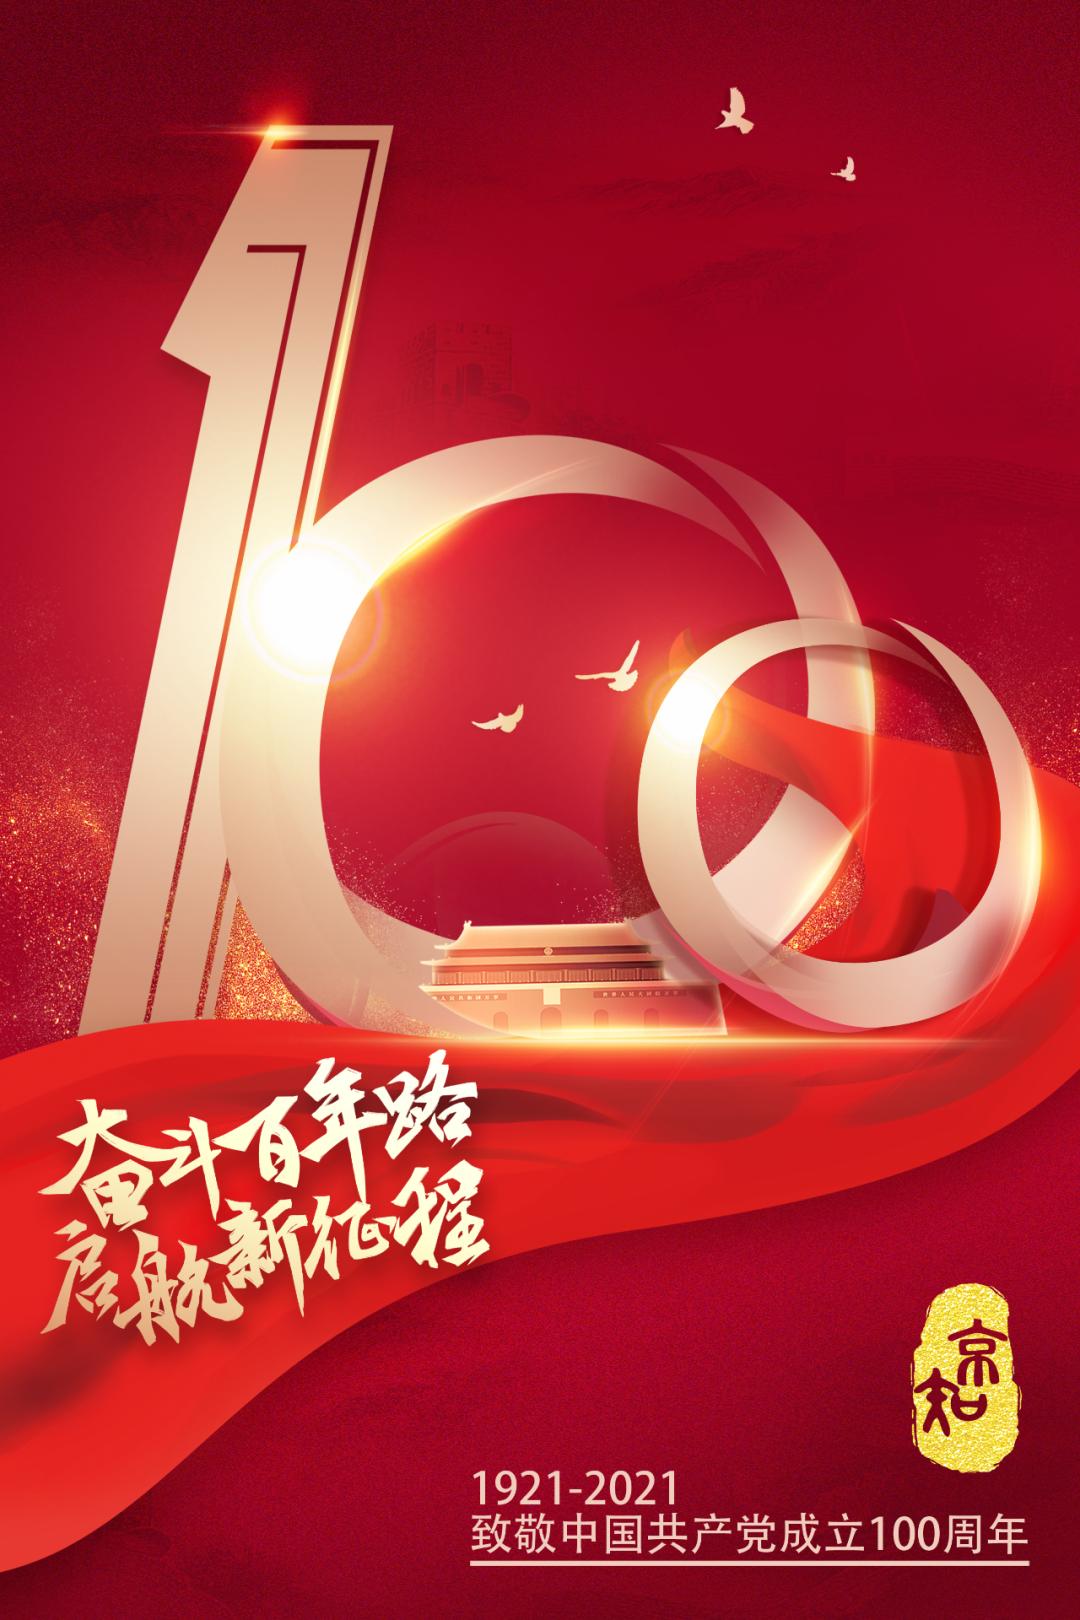 热烈庆祝中国共产党成立100周年!